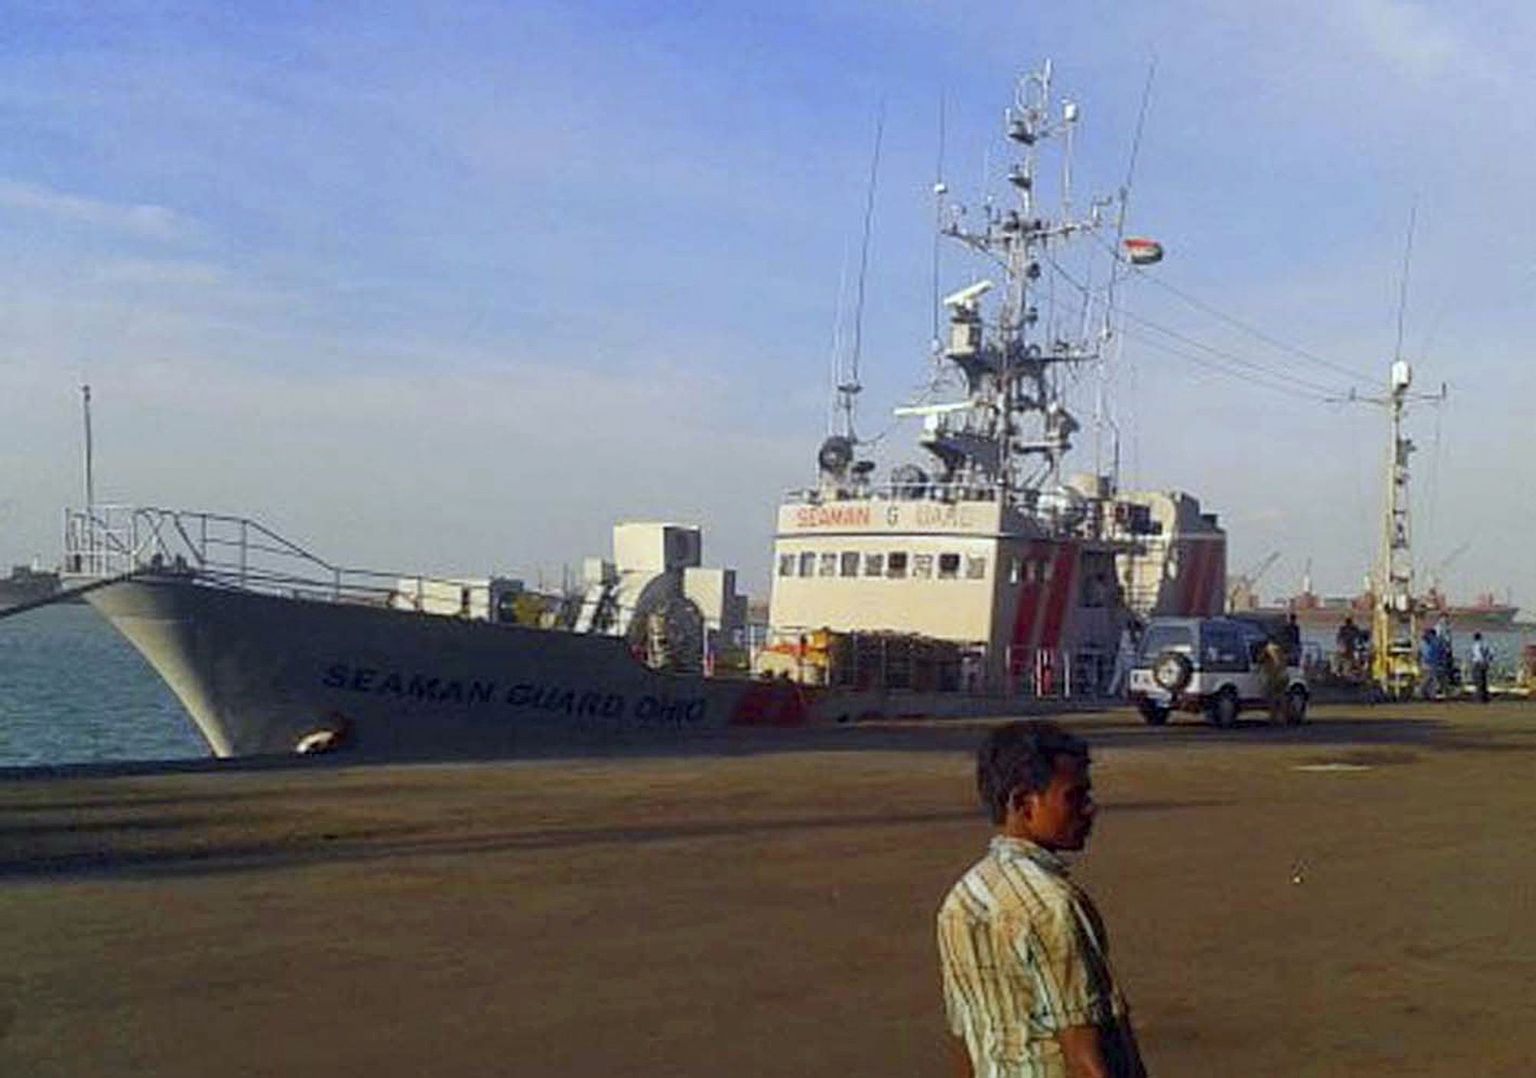 Piraaditõrjefirmale Advanfort, kelle jaoks töötasid eestlastest laevakaitsjad, kuuluv alus Seaman Guard Ohio on arestitud ja seisab Indias kai ääres.